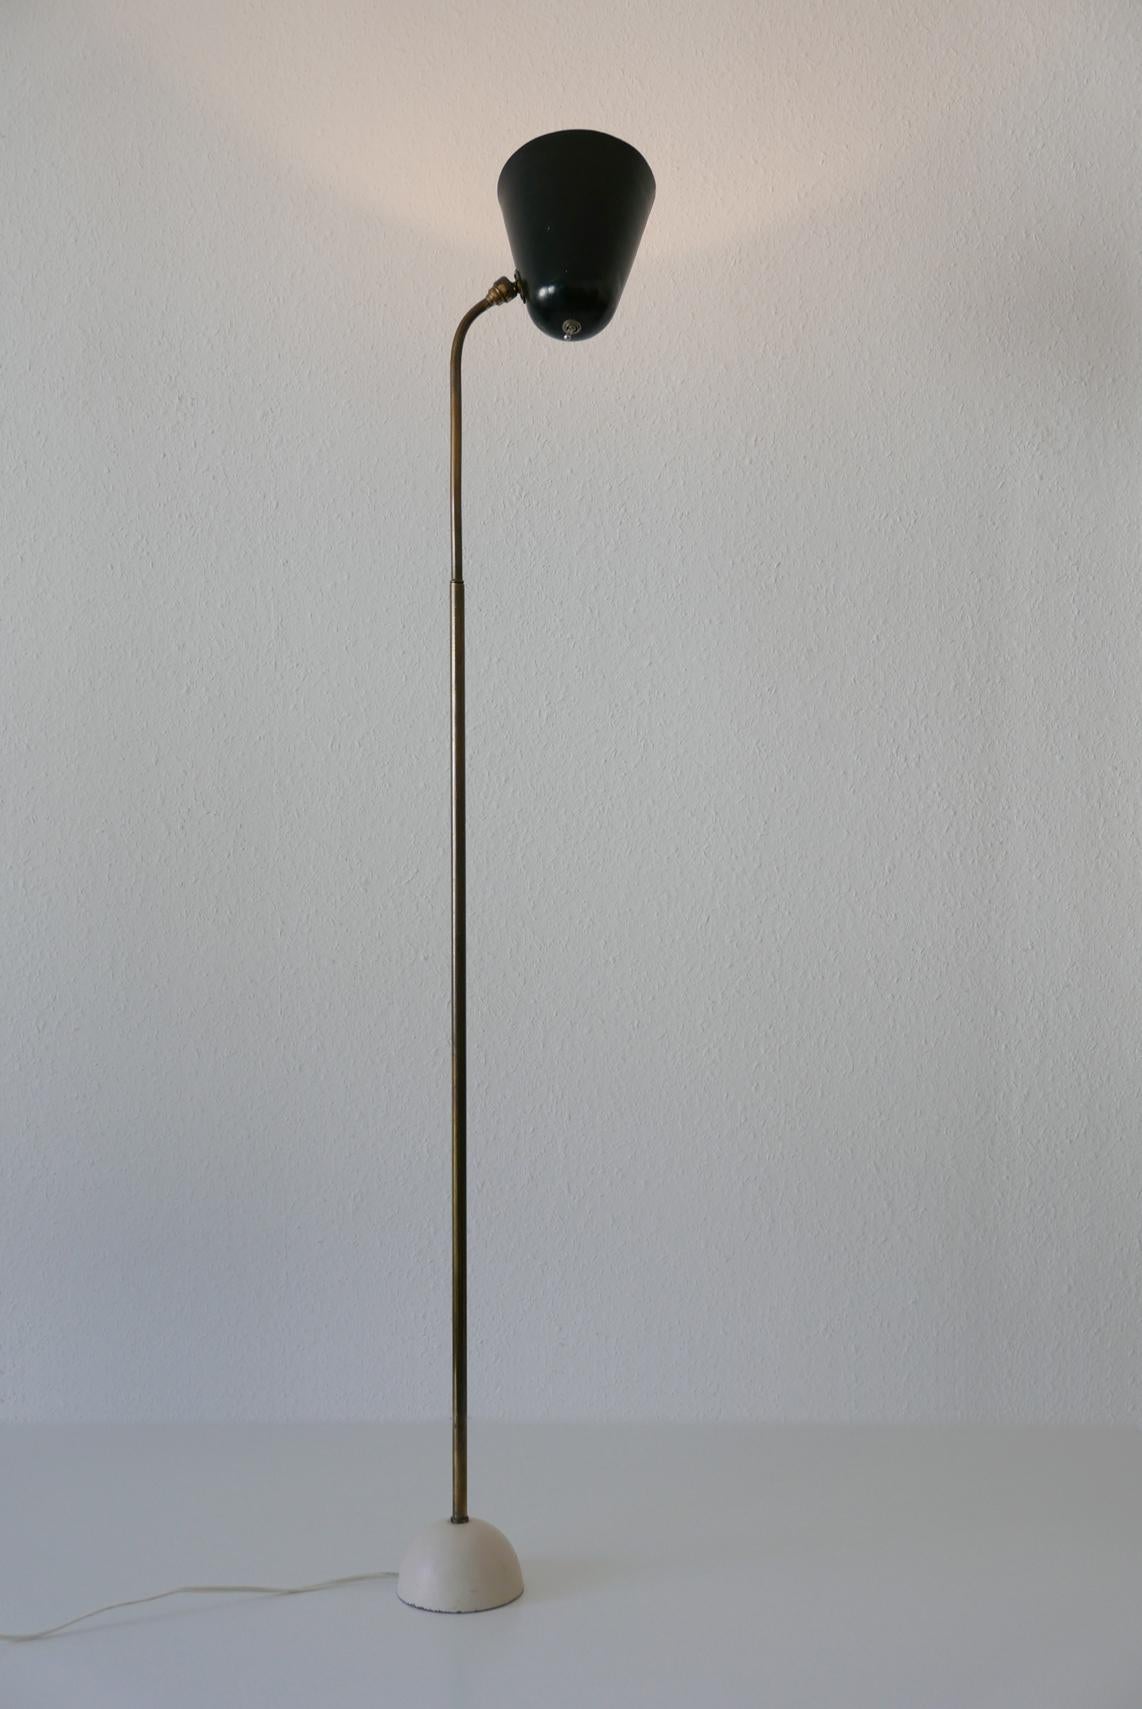 Äußerst seltene und elegante Stehlampe aus der Mitte des Jahrhunderts. Entworfen und hergestellt in den 1950er Jahren, Deutschland. 
Dank der Gelenkkugel kann der Lampenschirm in jede Position ausgerichtet werden. Einstellbare Höhe.

Ausgeführt in